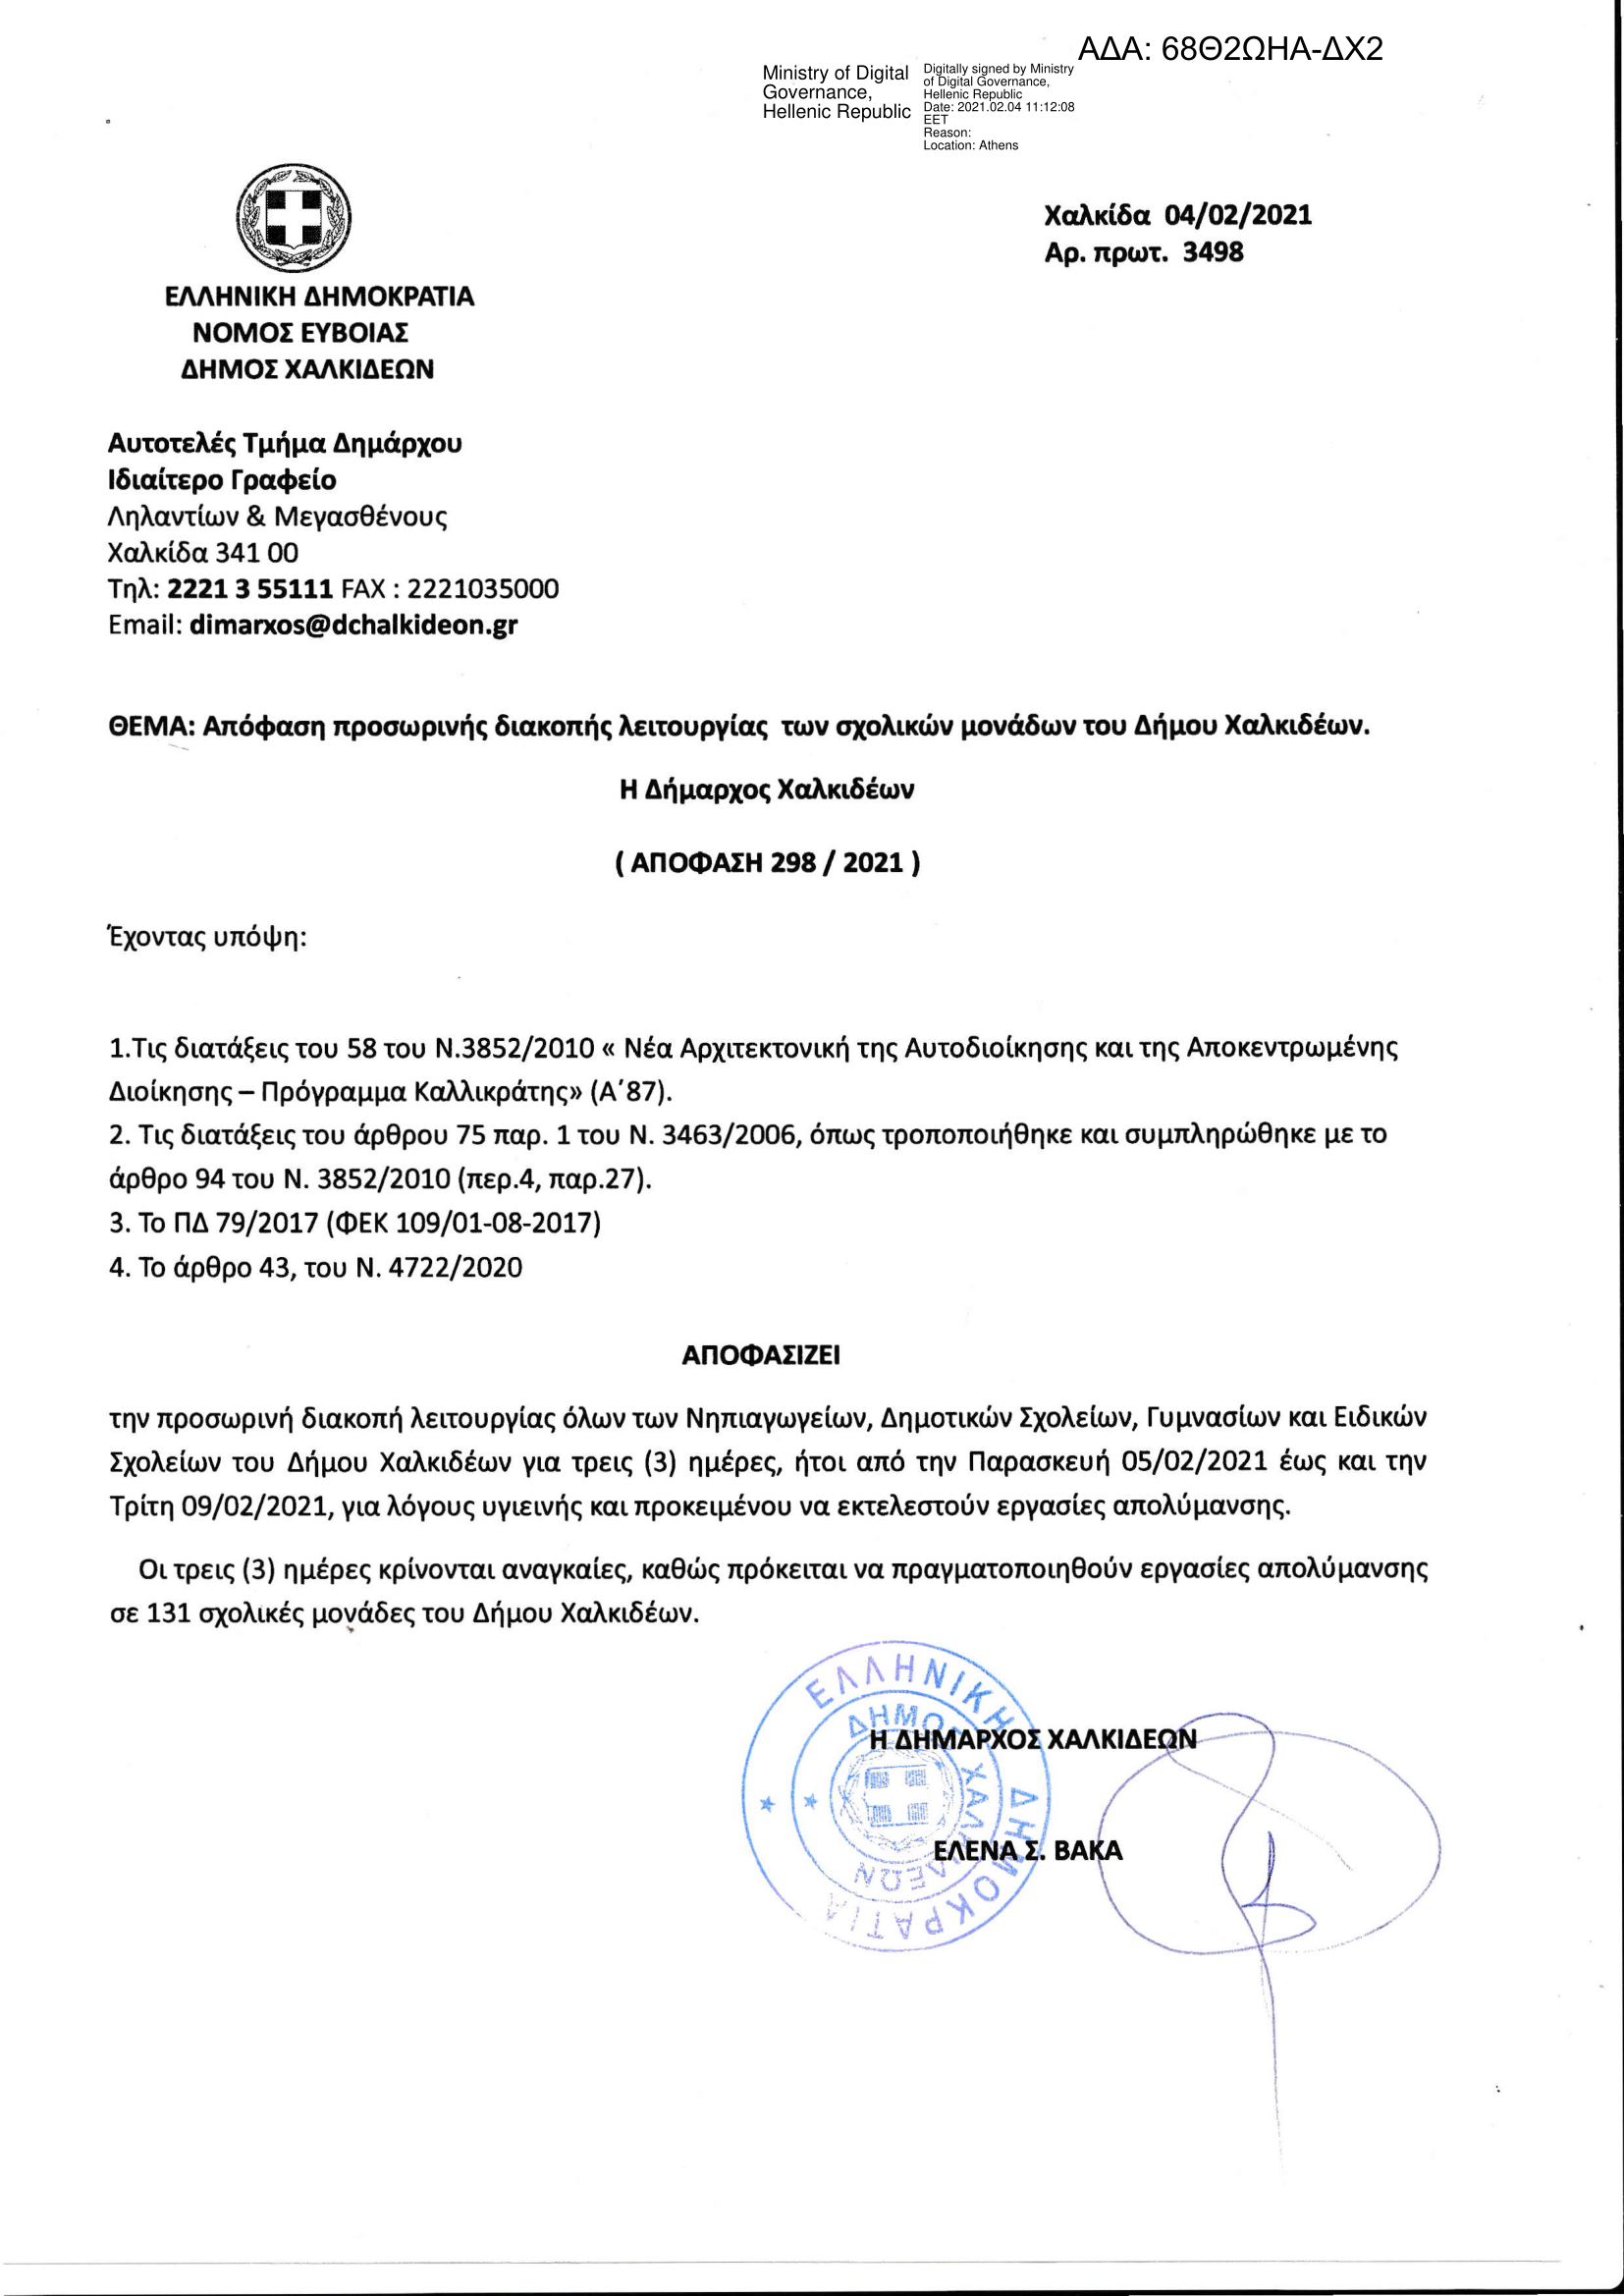 Απόφαση προσωρινής διακοπής λειτουργίας των σχολικών μονάδων του Δήμου Χαλκιδέων